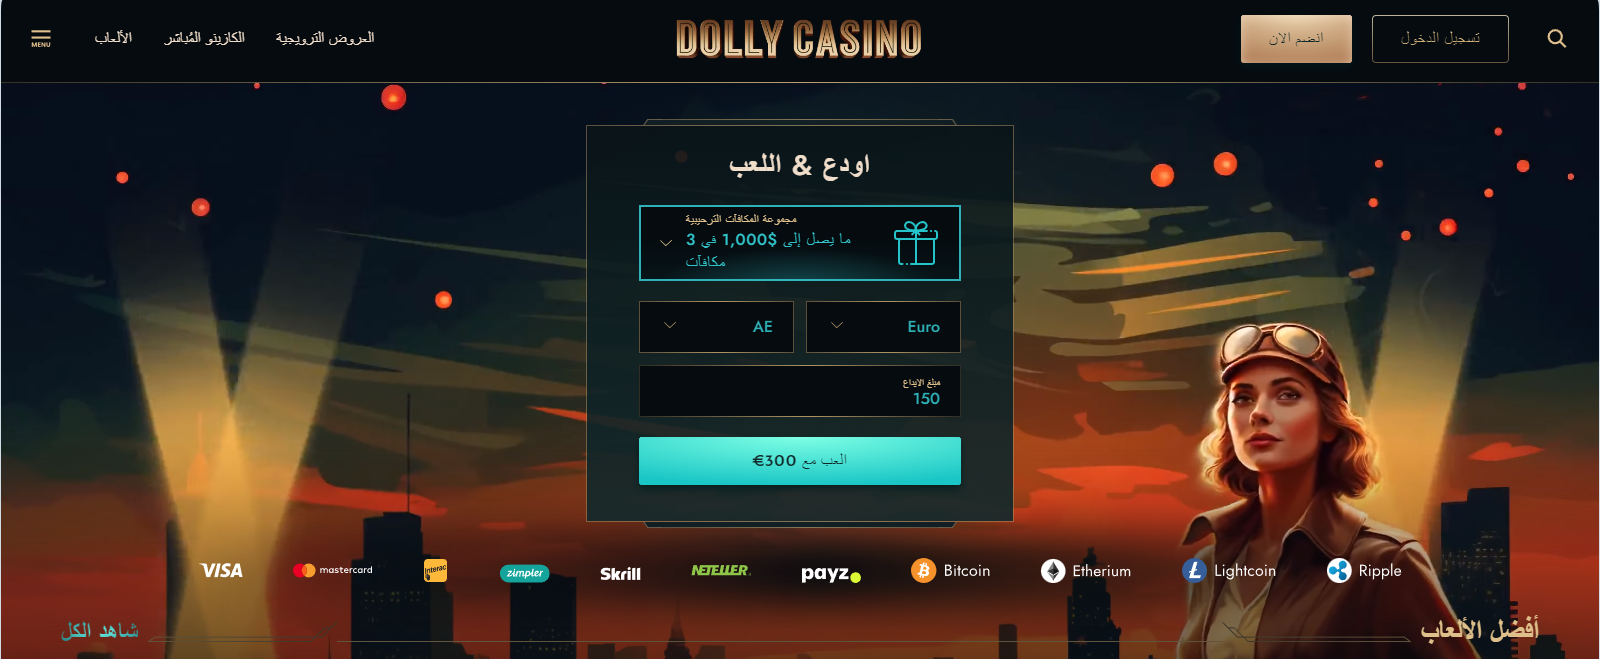 80e3ca72 e5ca 4606 9883 140b78e815d5 - Dolly Casino